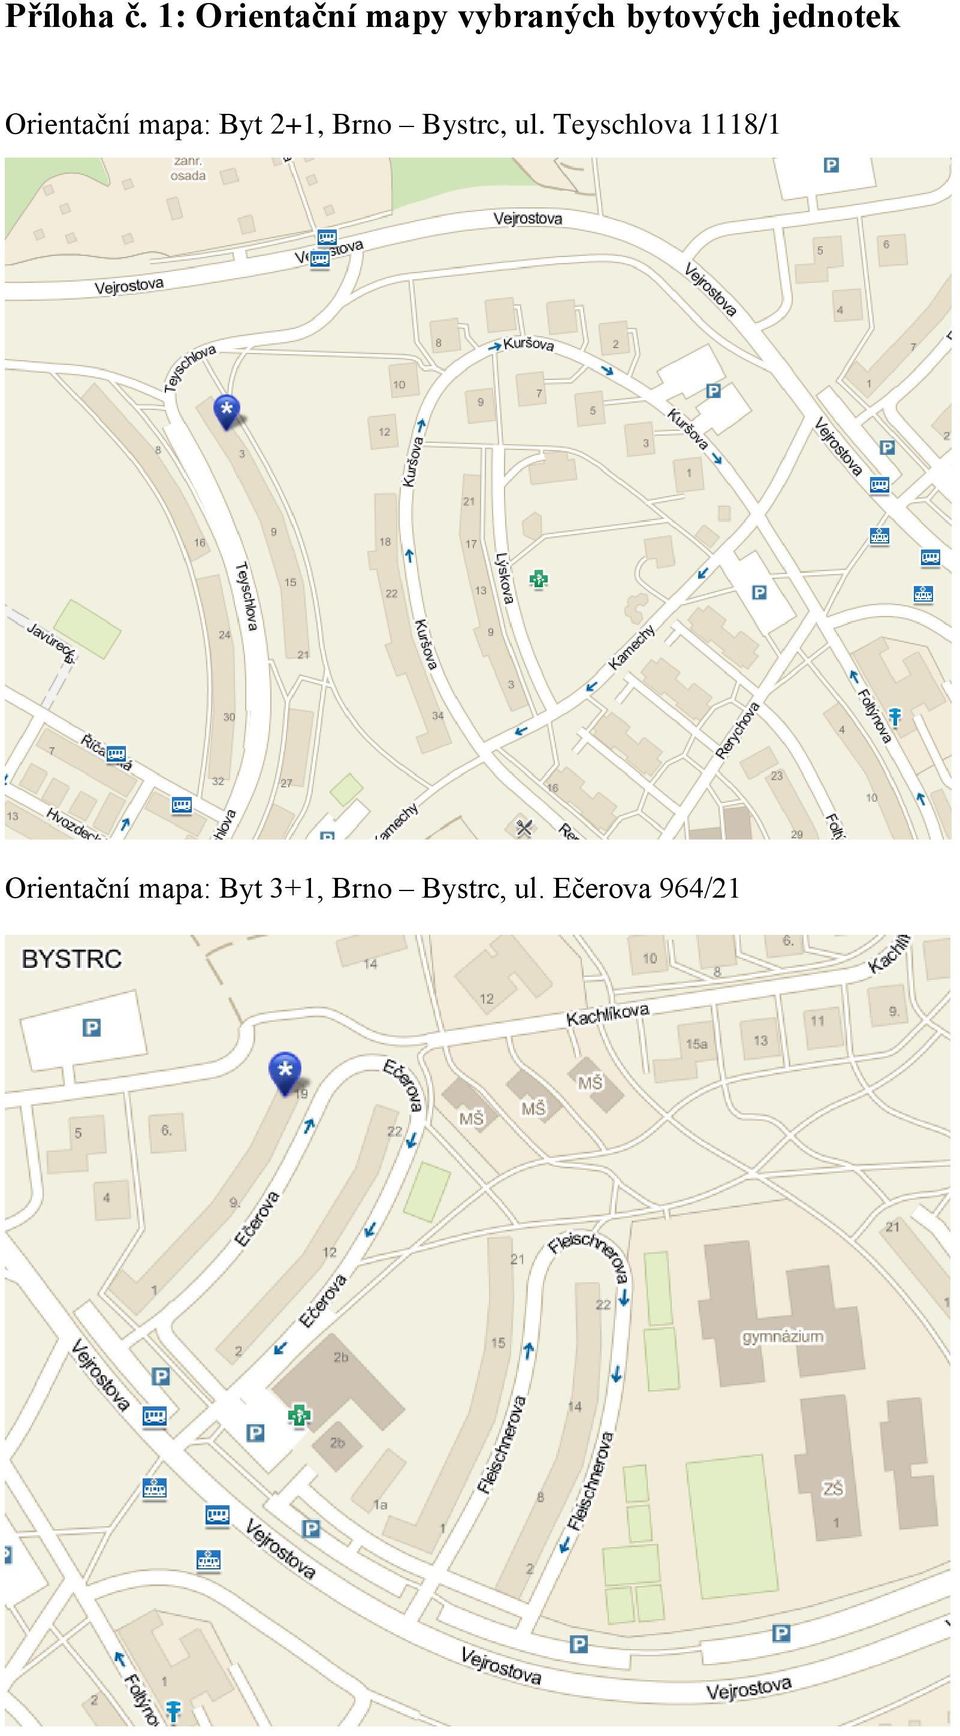 jednotek Orientační mapa: Byt 2+1, Brno